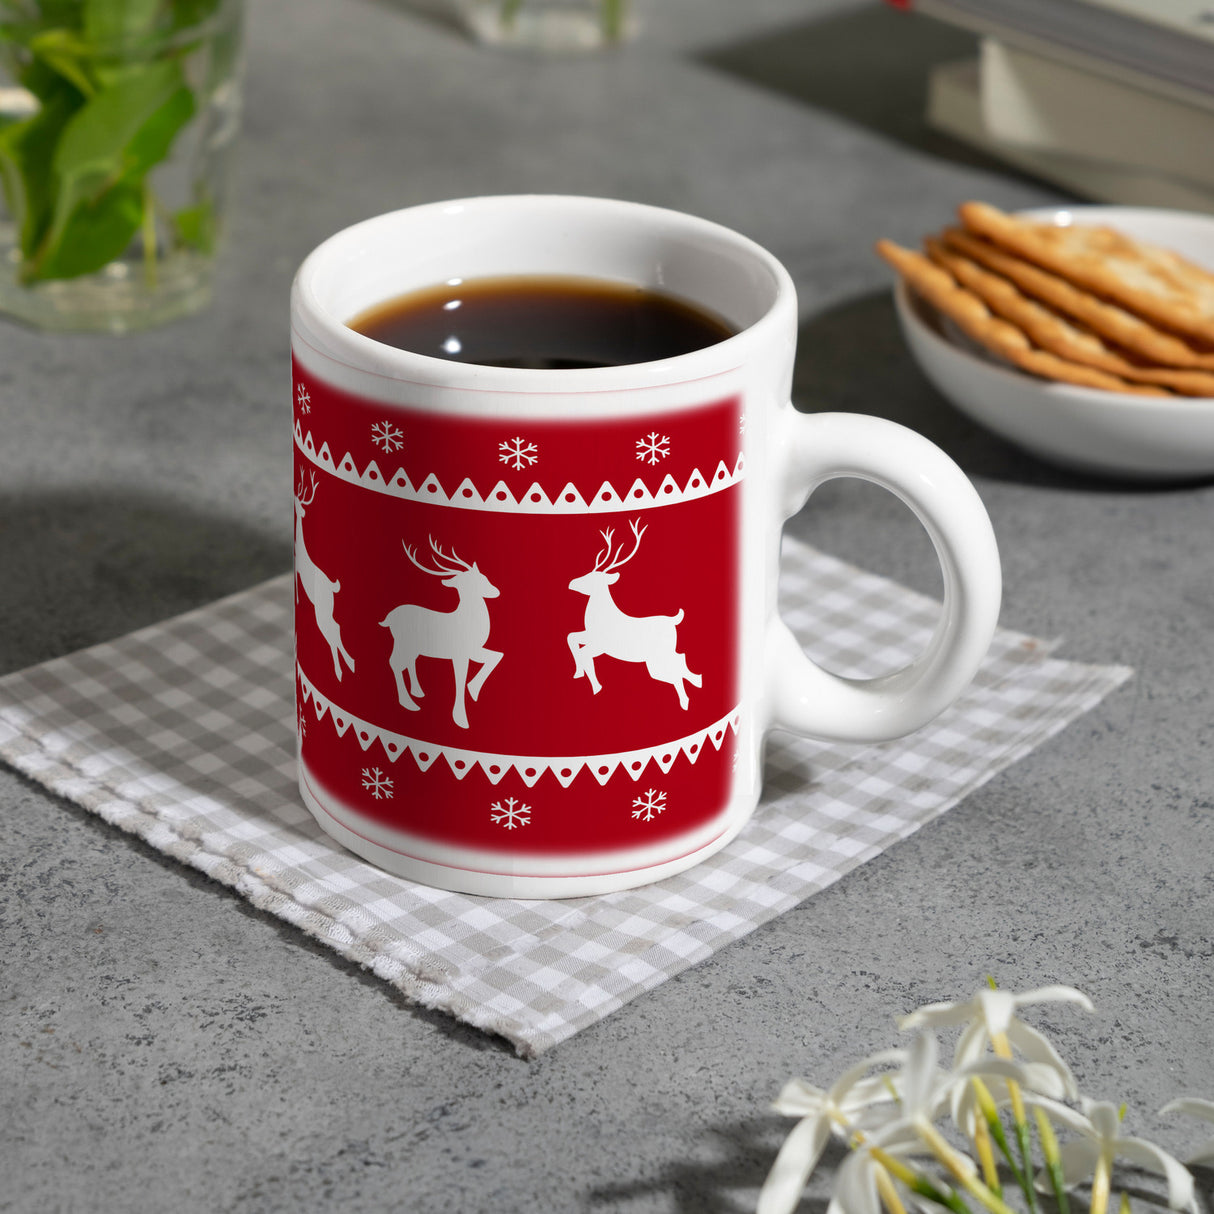 Weihnachten Kaffeebecher mit Rentieren